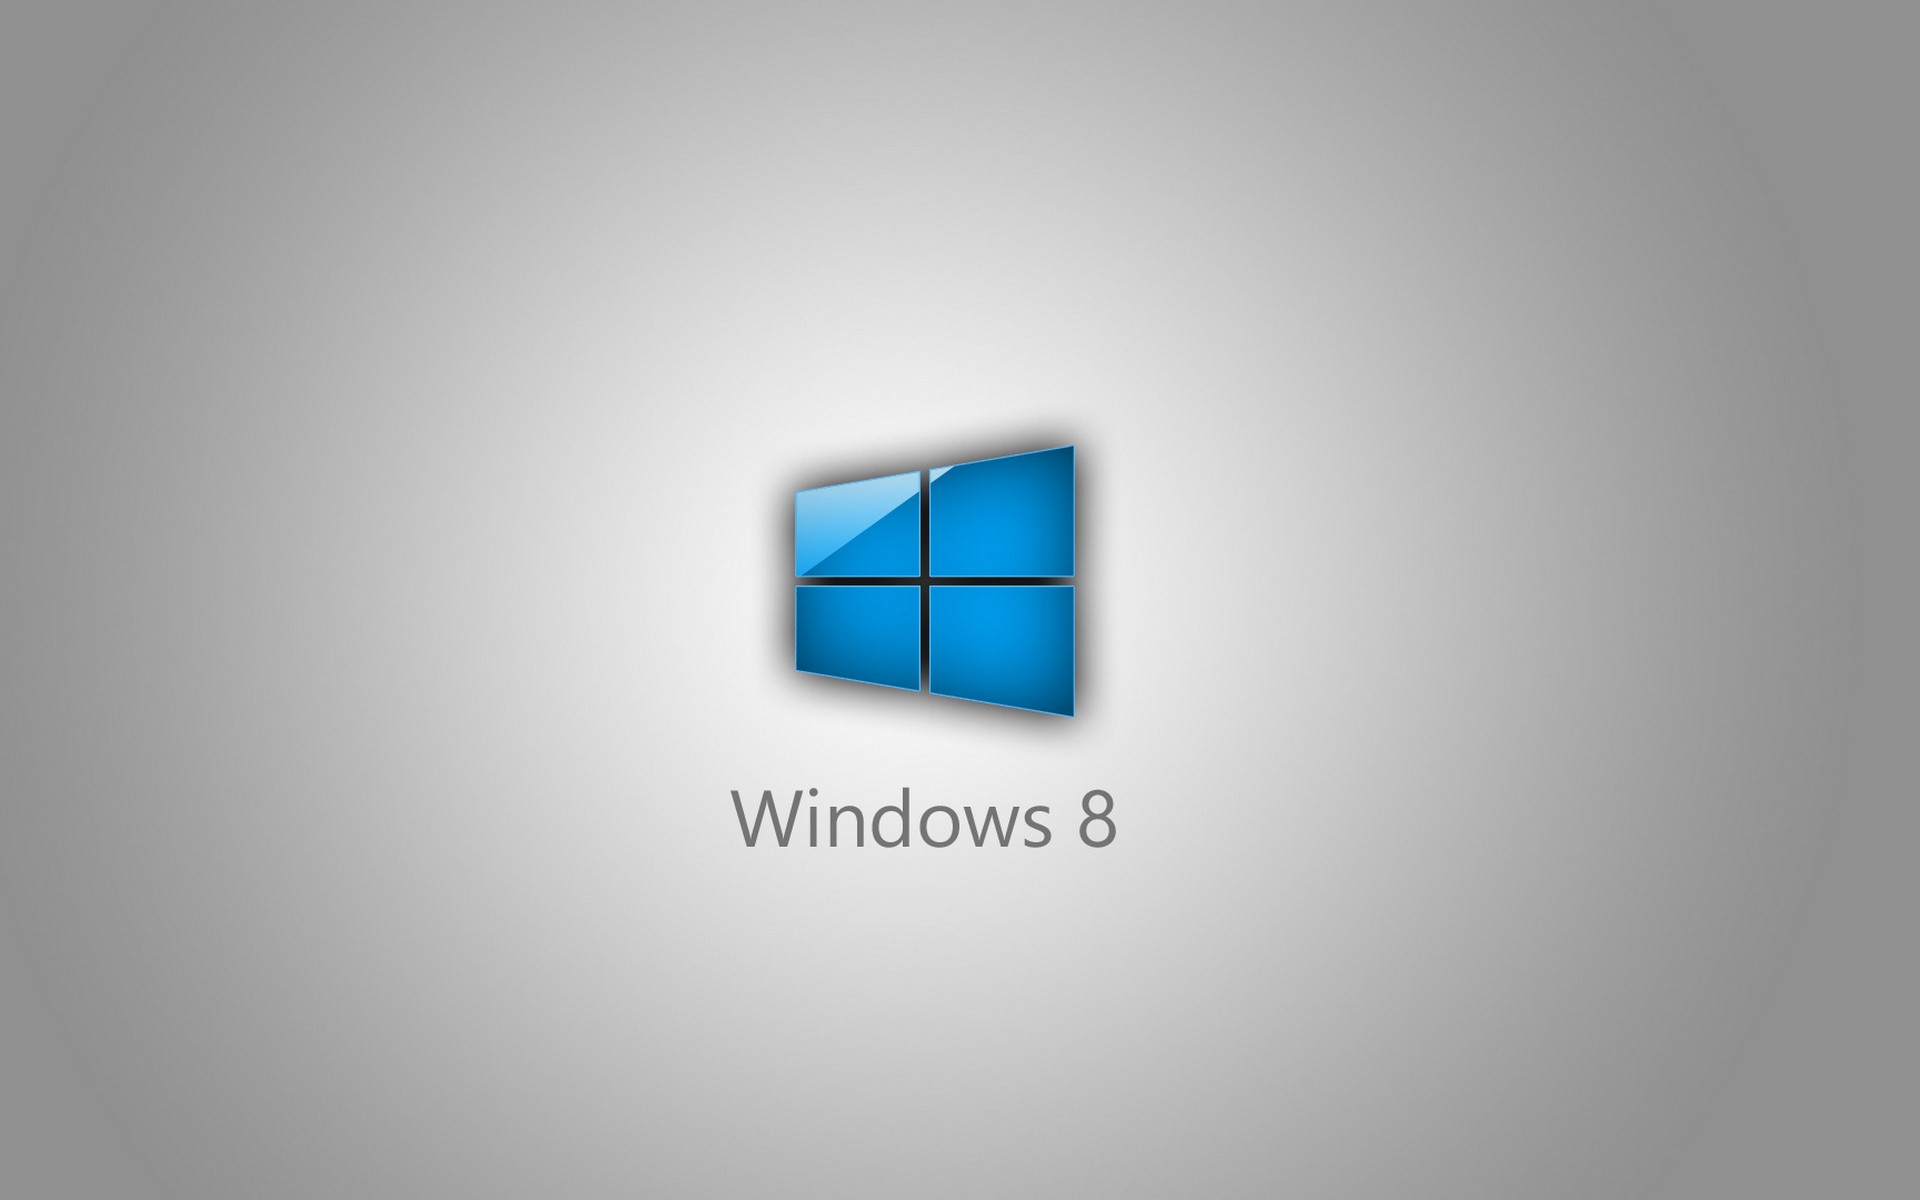 Логотип Windows 8 на сером фоне